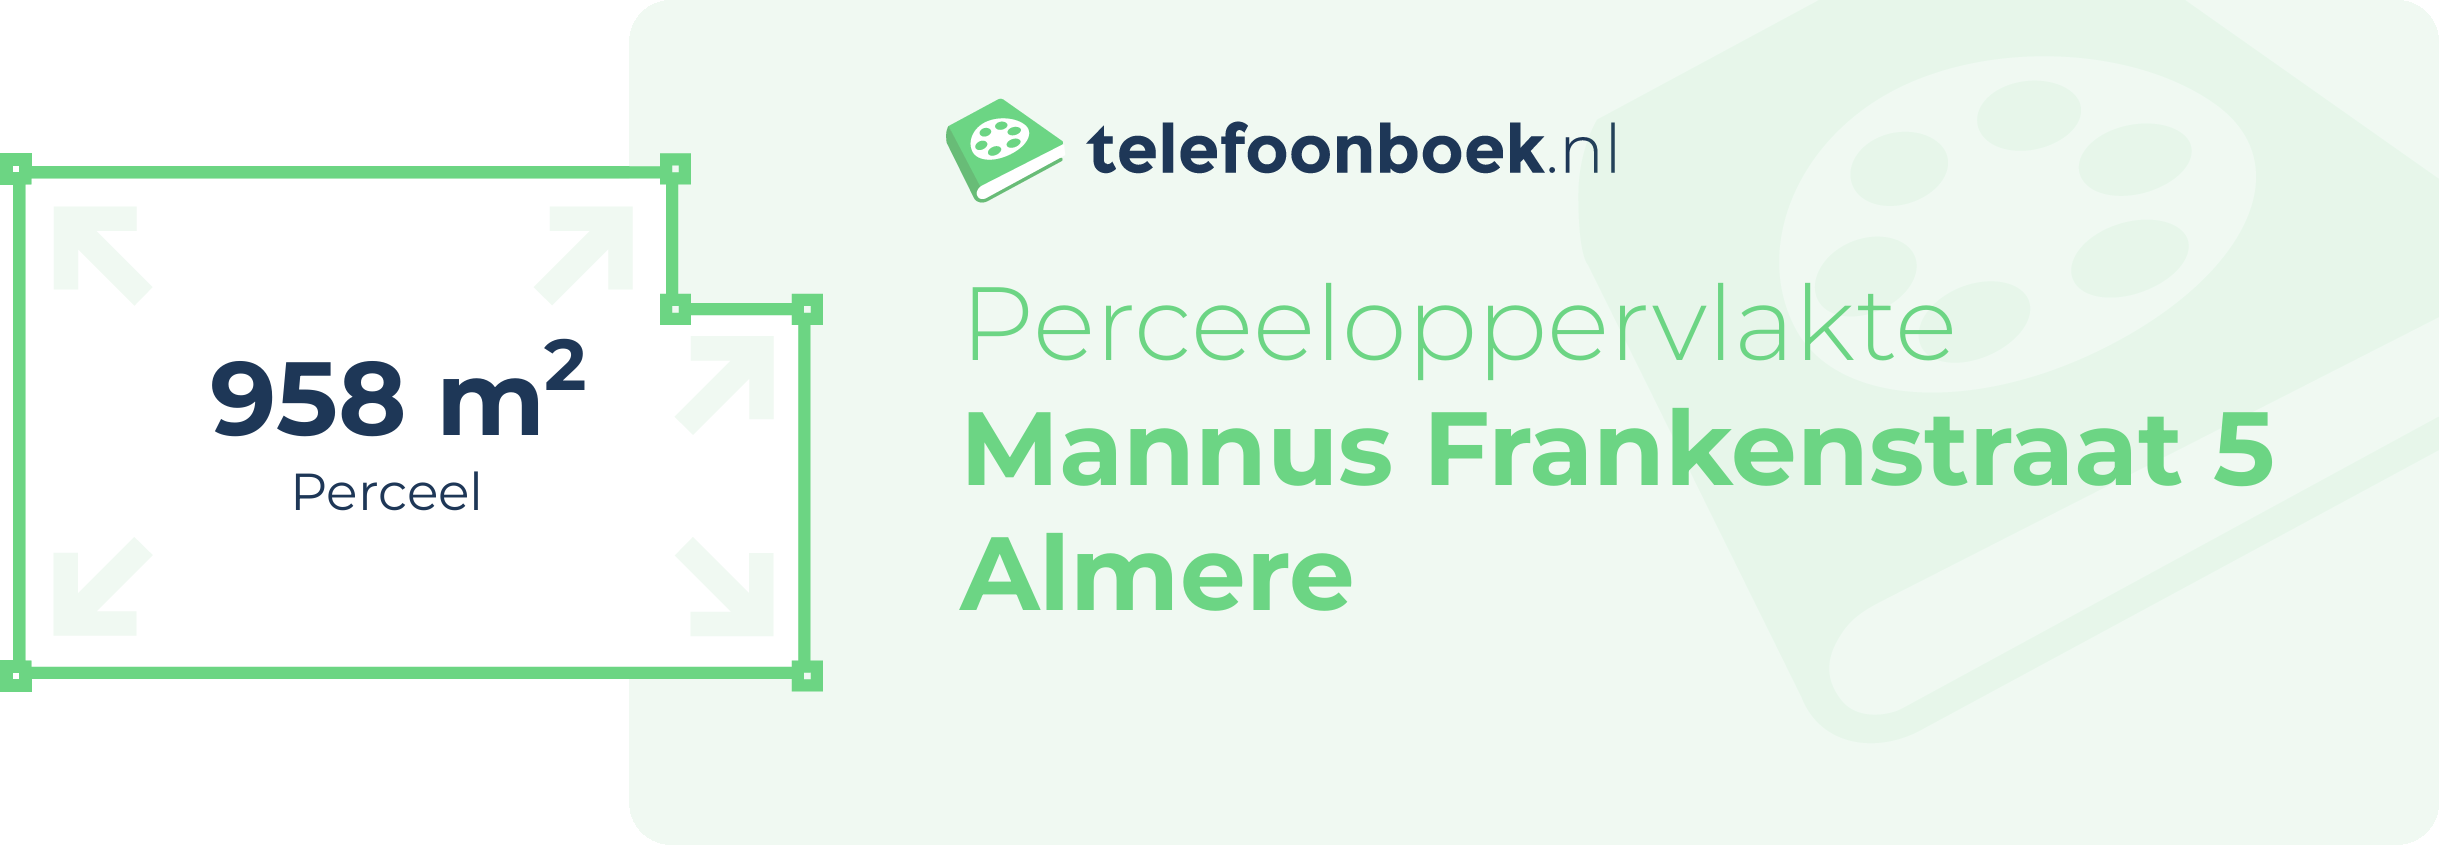 Perceeloppervlakte Mannus Frankenstraat 5 Almere